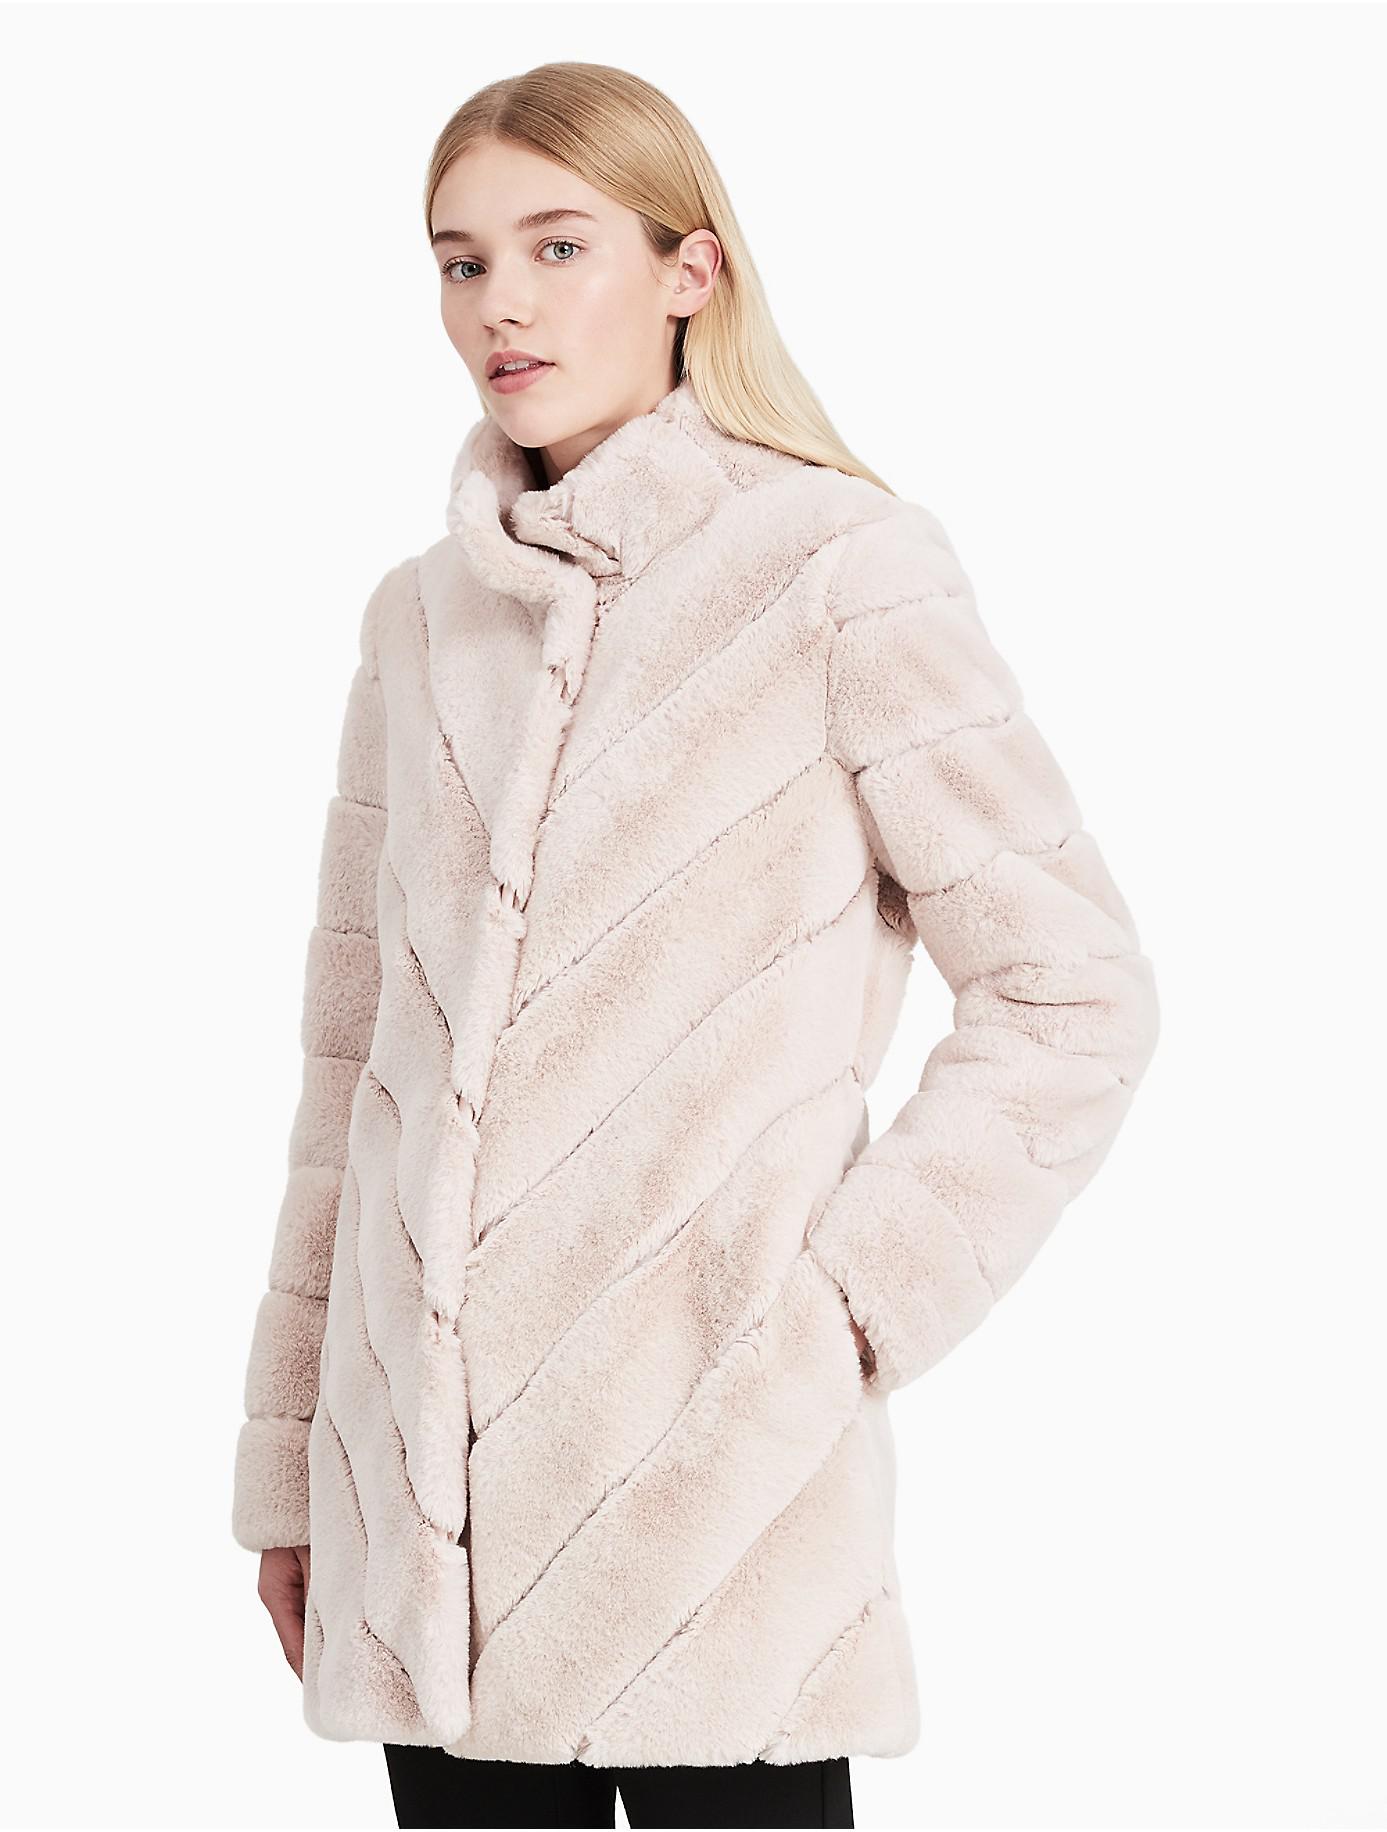 calvin klein white fur jacket